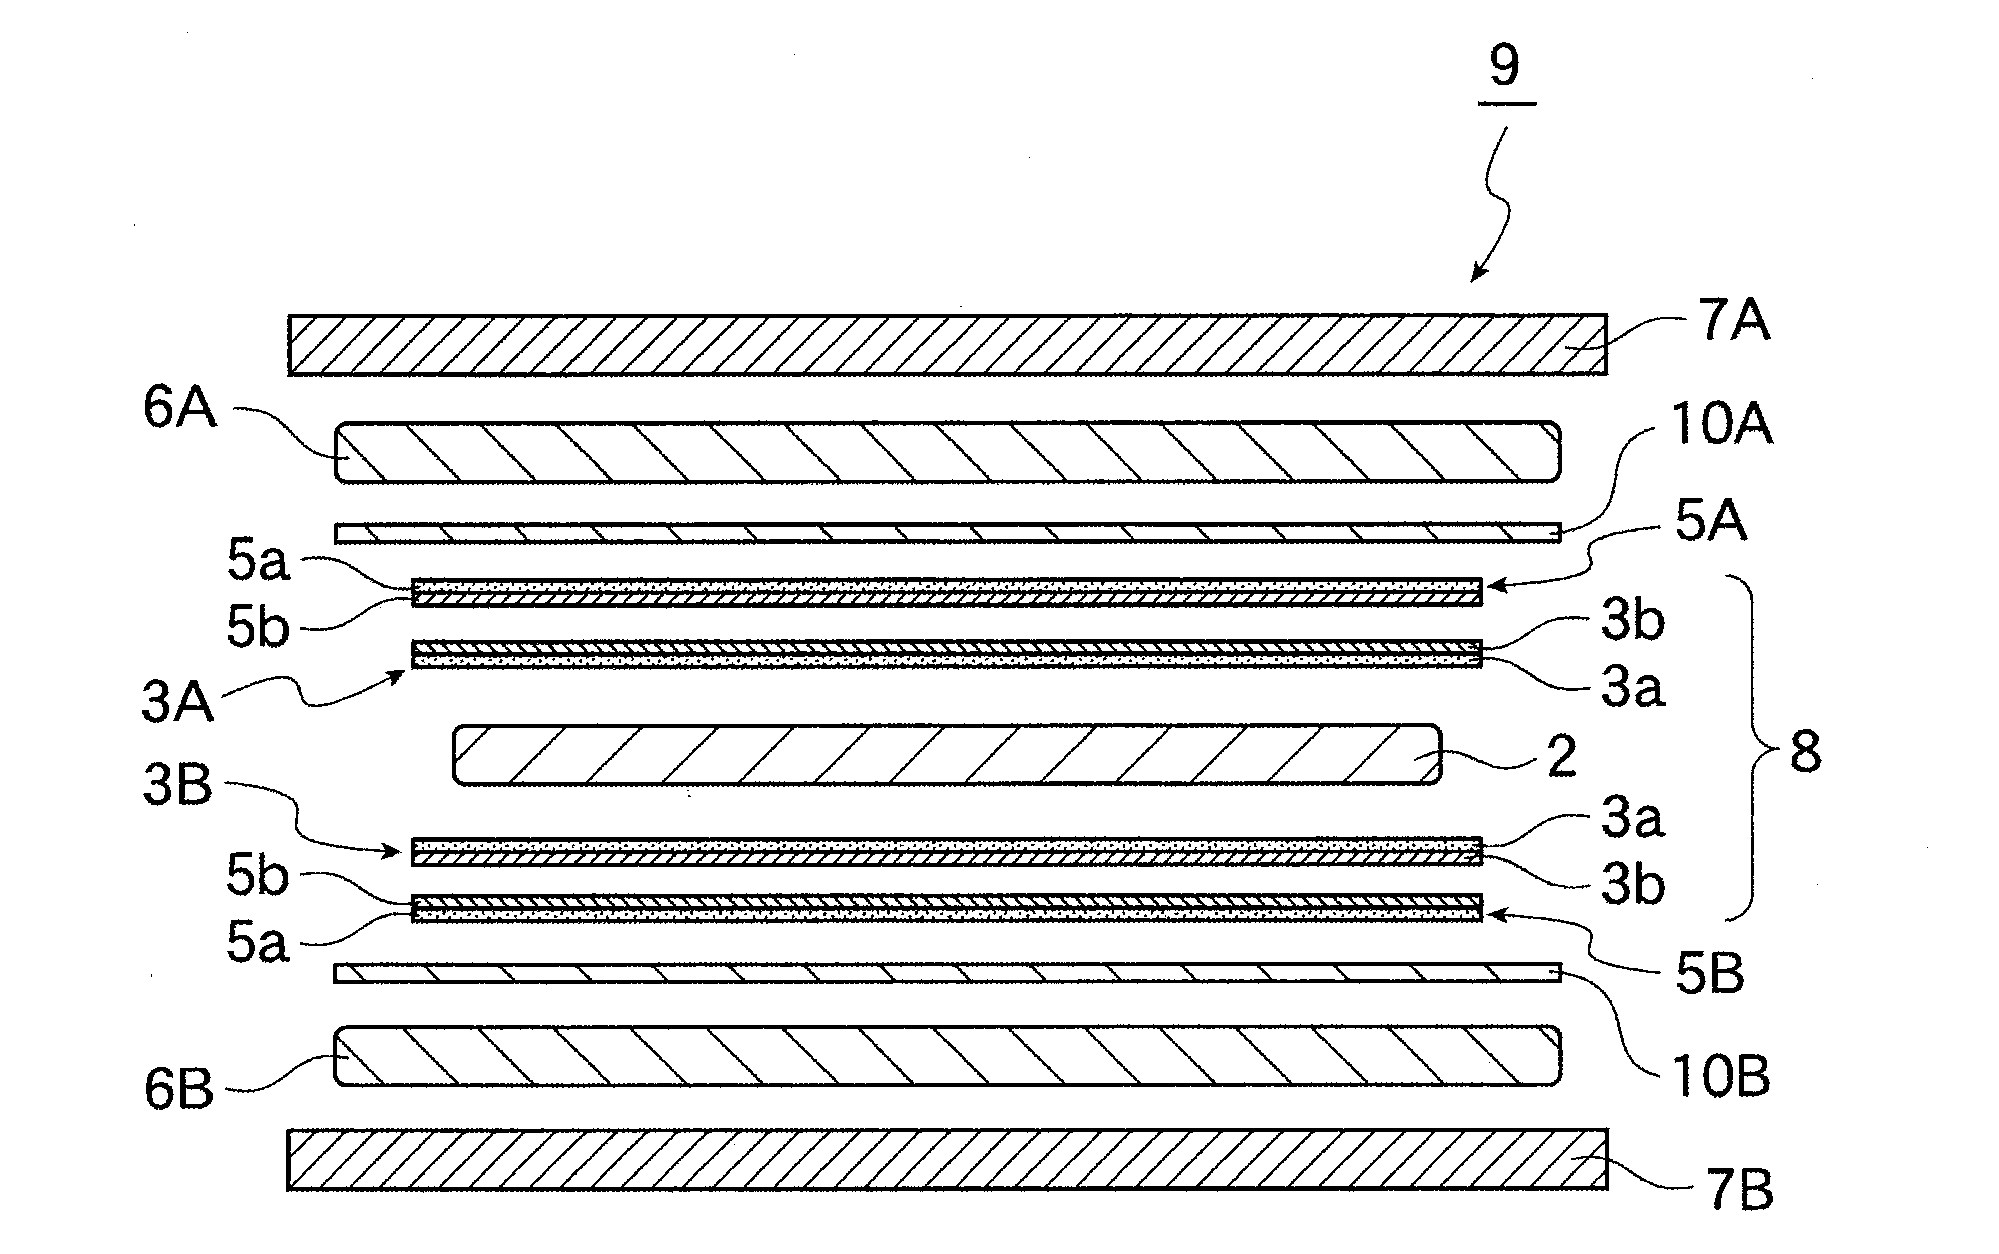 Method for producing metal foil laminate